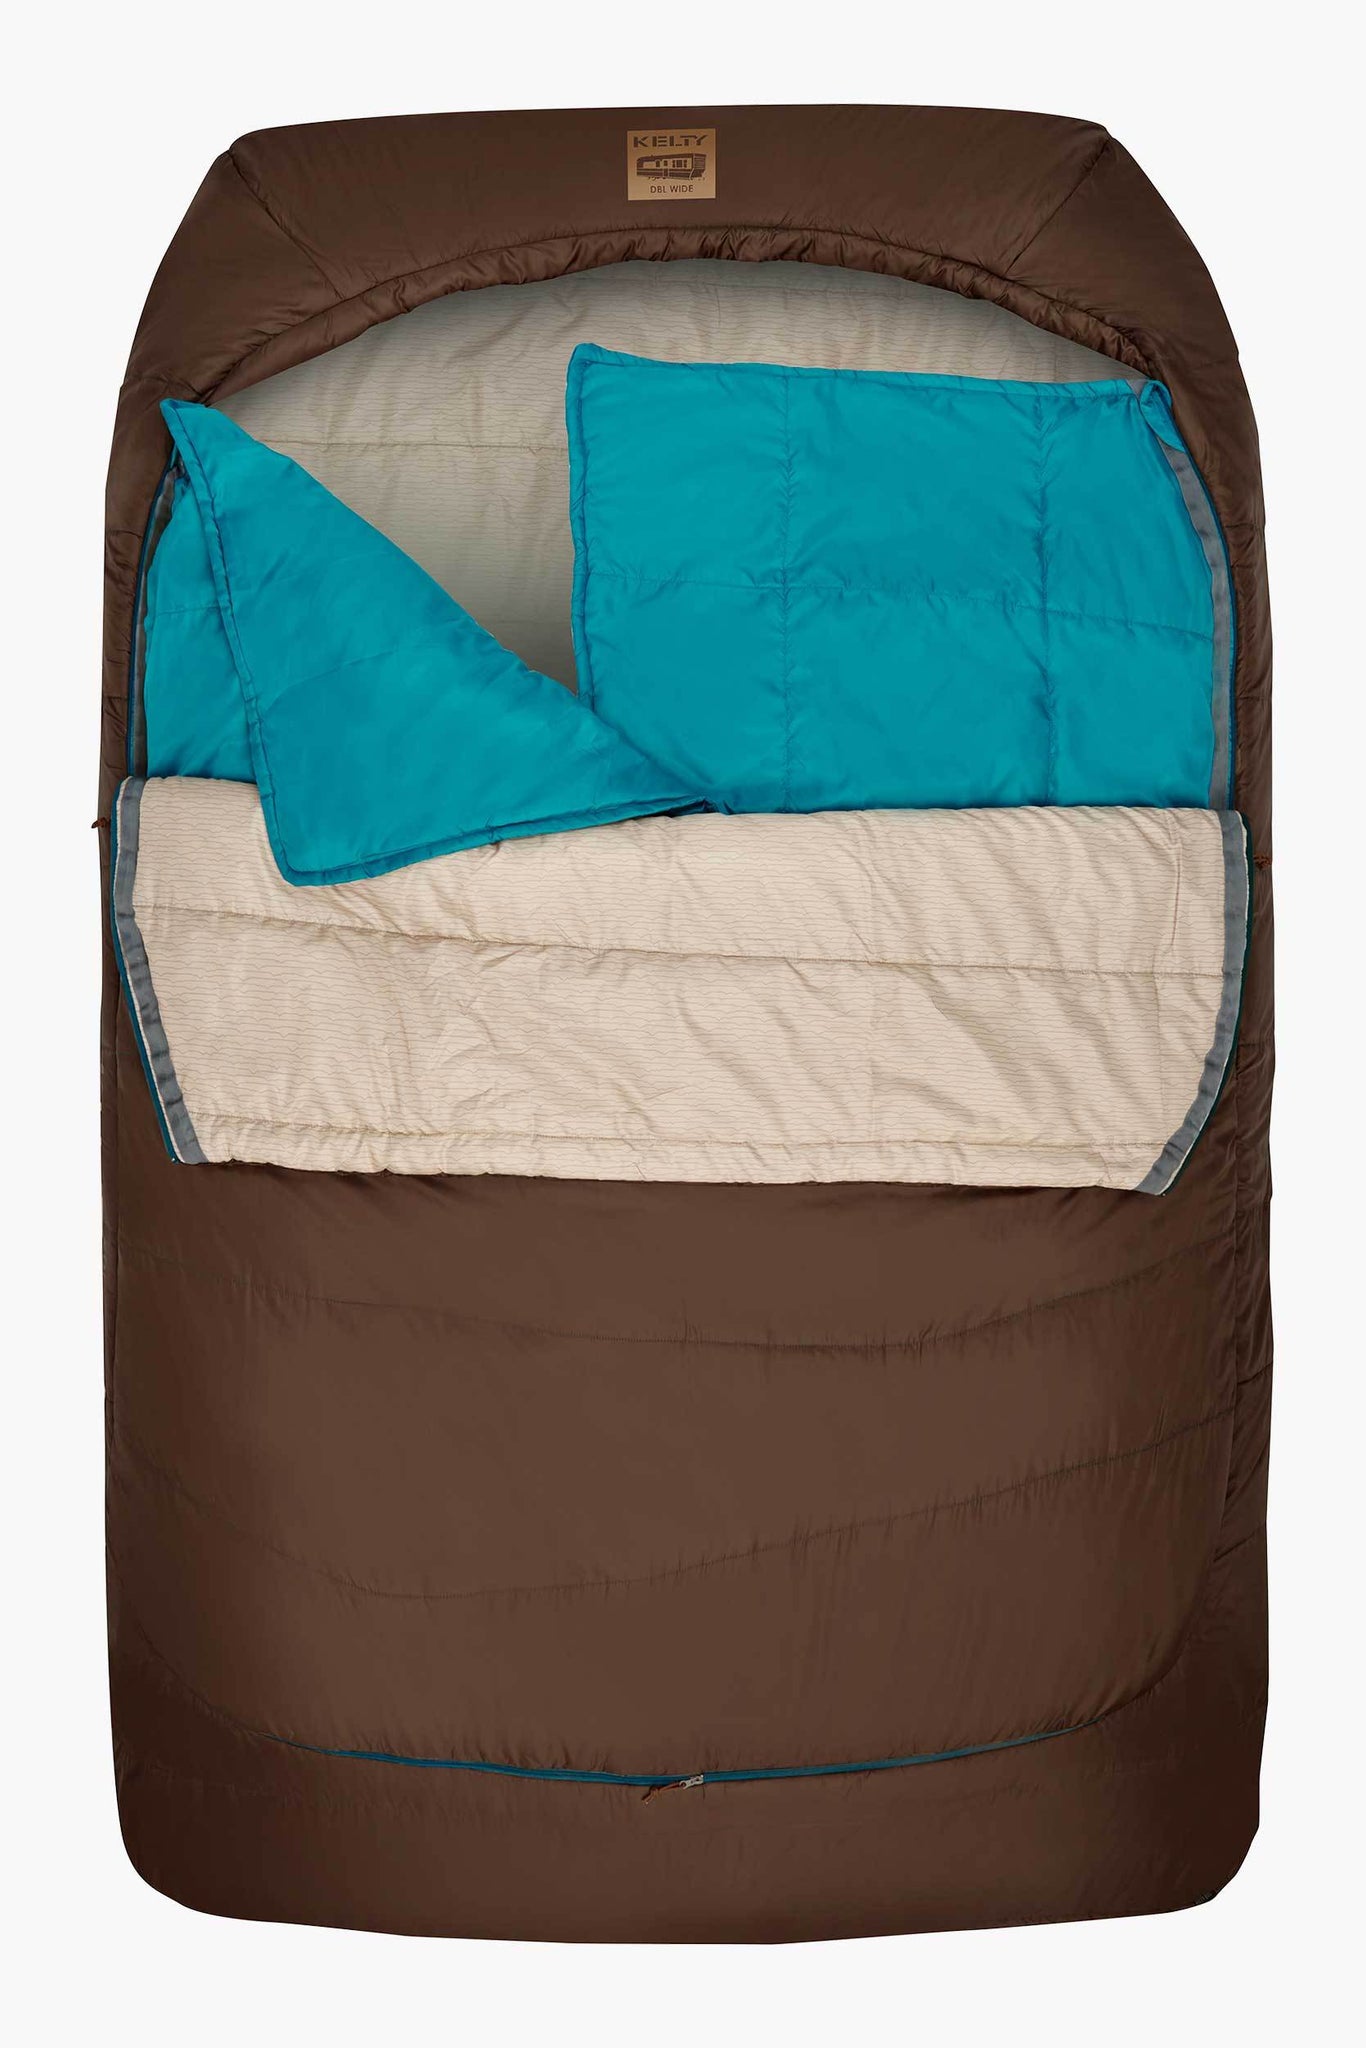 Kelty Tru Comfort Doublewide Sleeping Bag